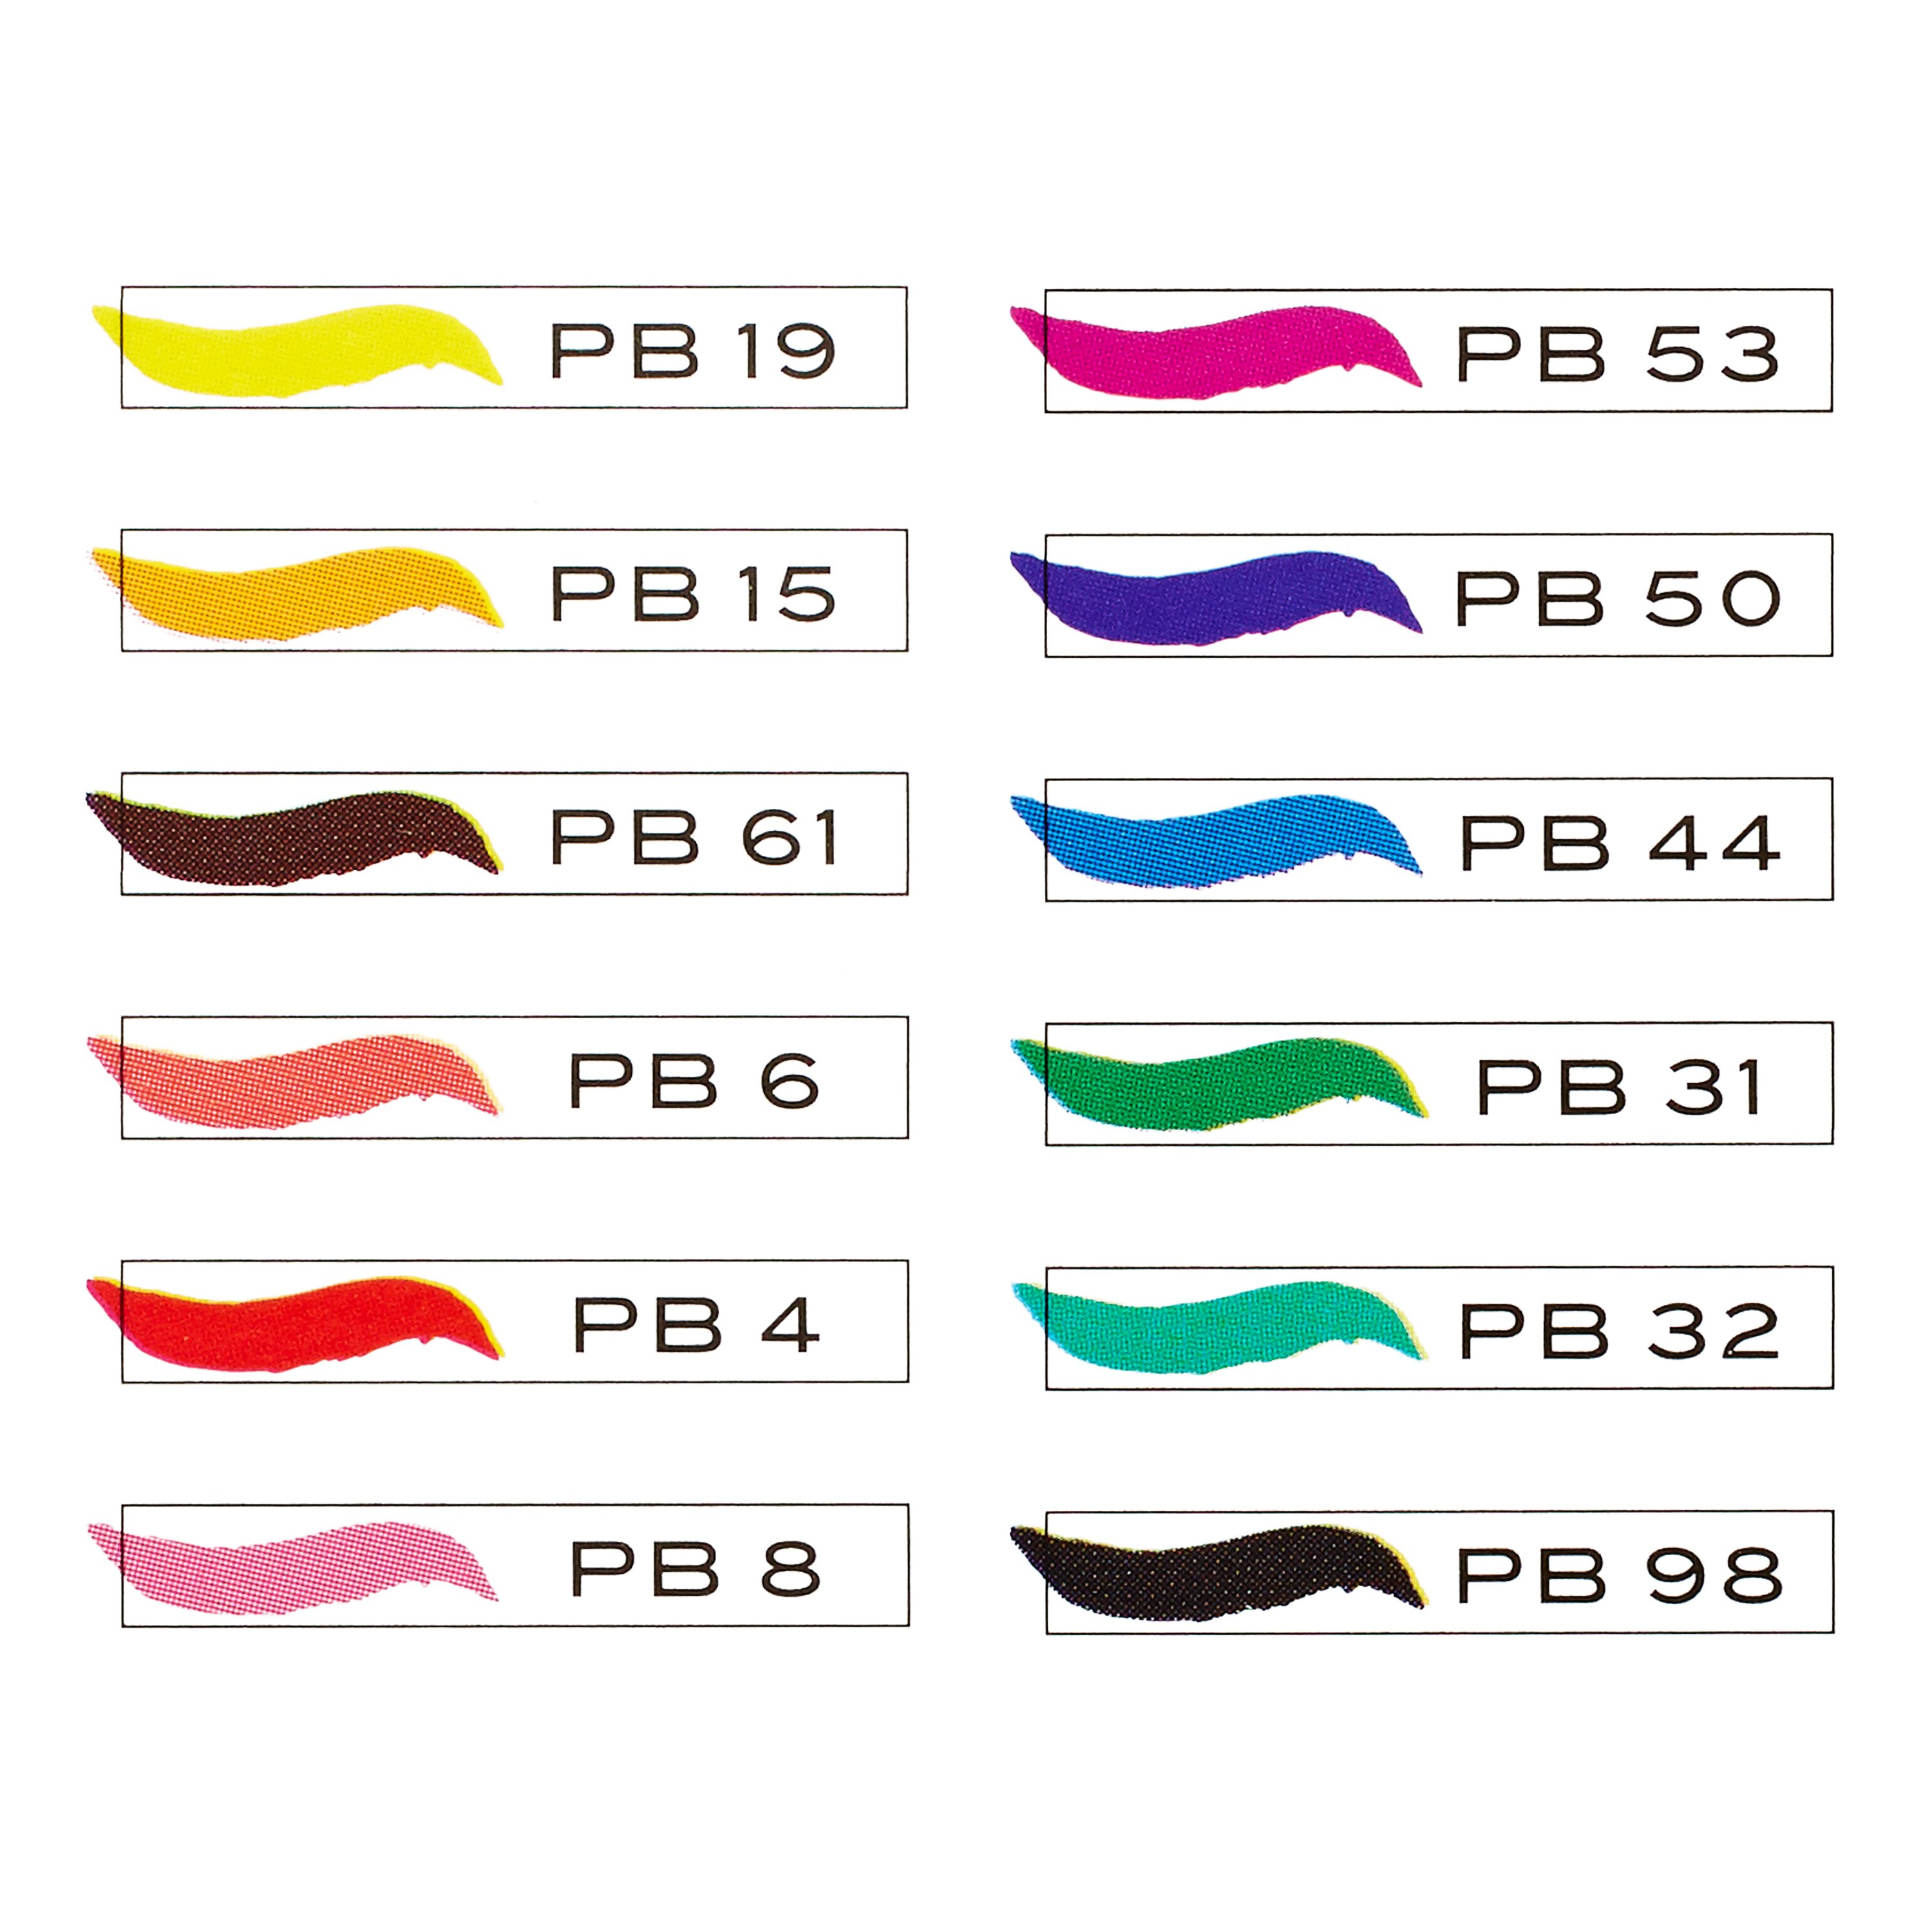 Prismacolor Brush Marker Rhodamine PB55